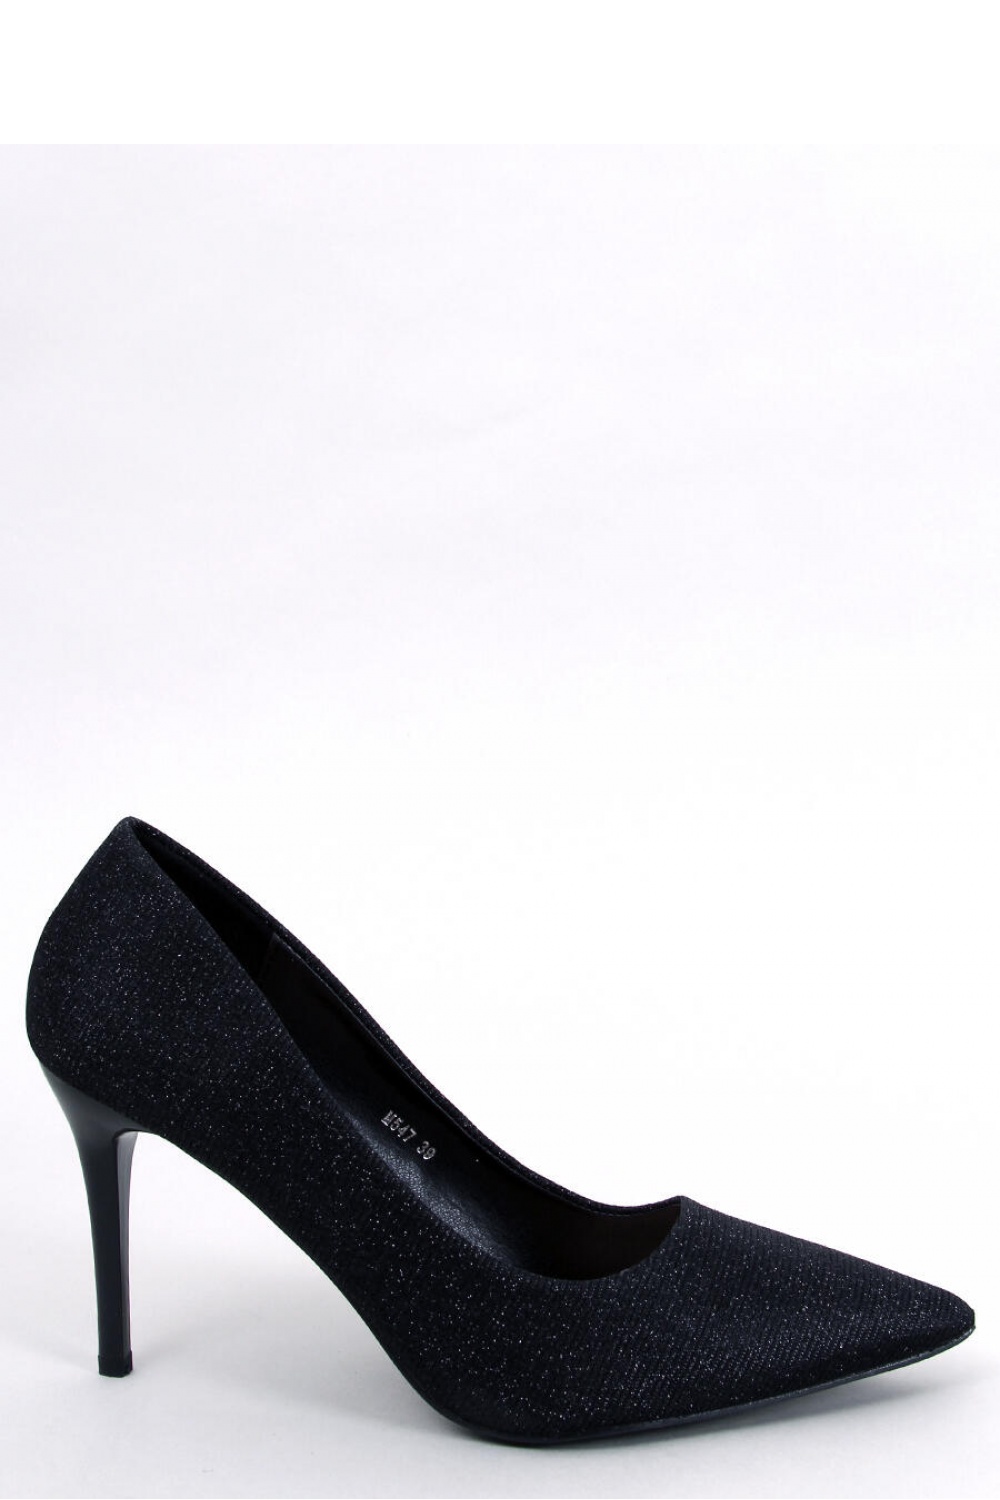 High heels model 180715 Inello